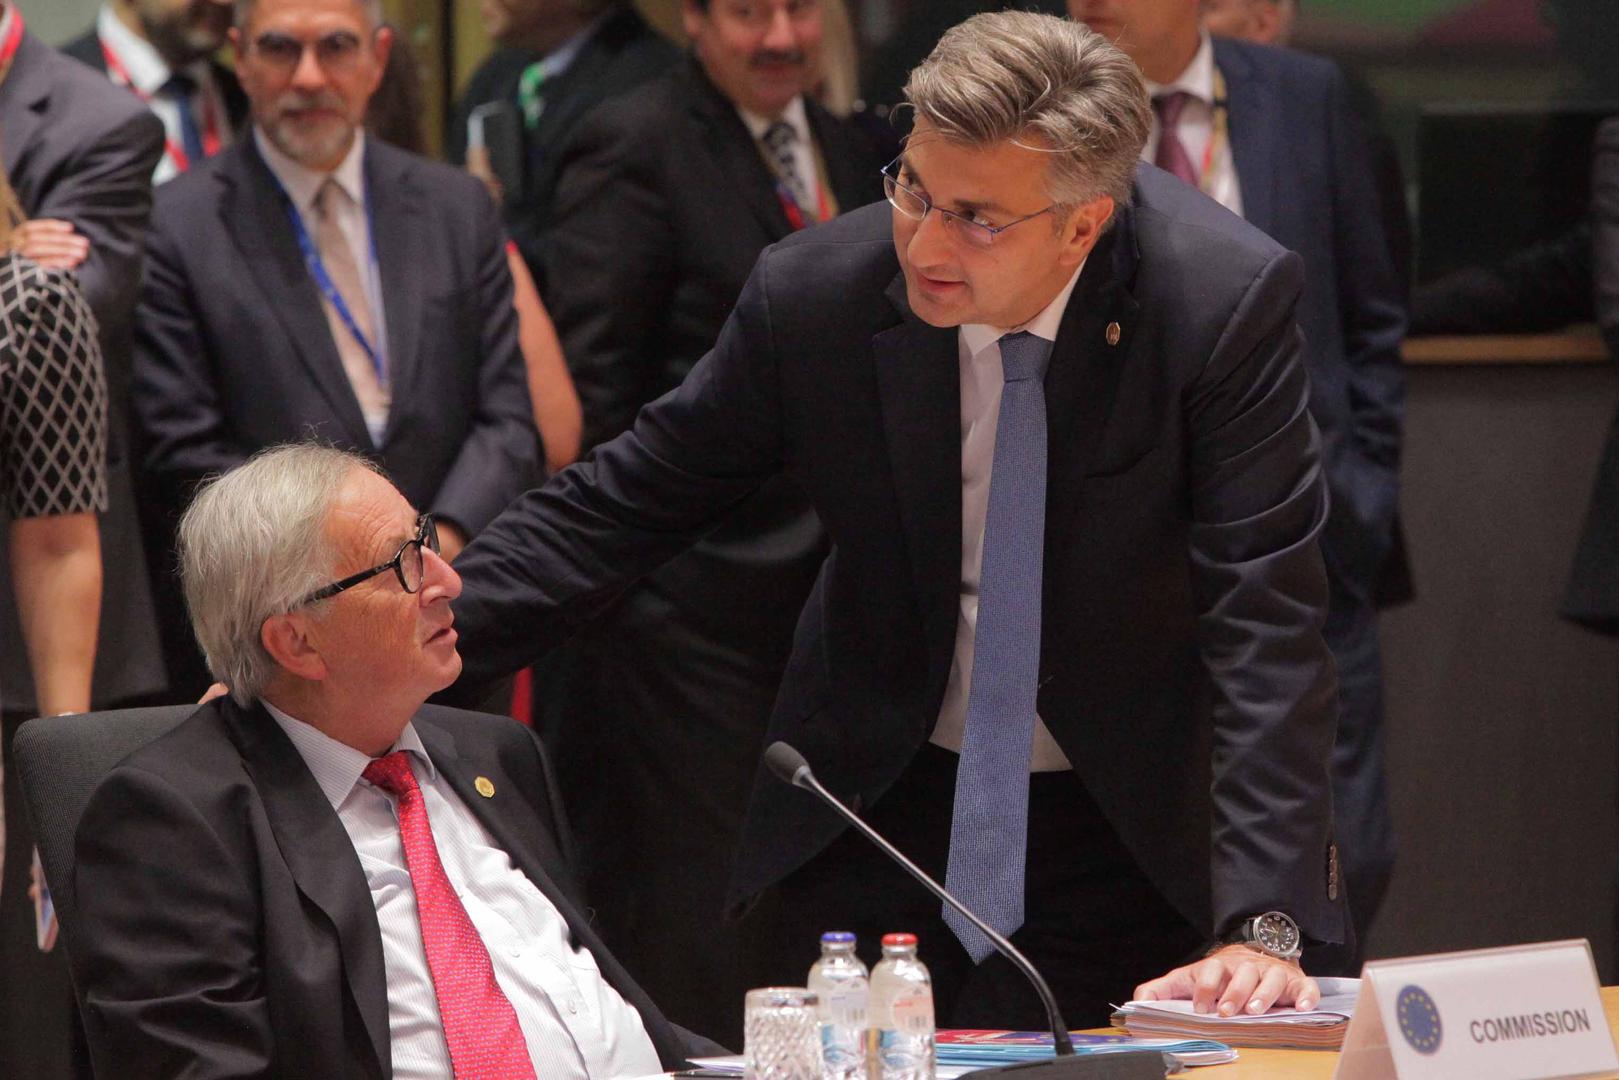 Hrvatski premijer Andrej Plenković razgovara s predsjednikom Europske komisije Jean-Claudeom Junckerom na početku sastanka Europskog vijeća u Bruxellesu